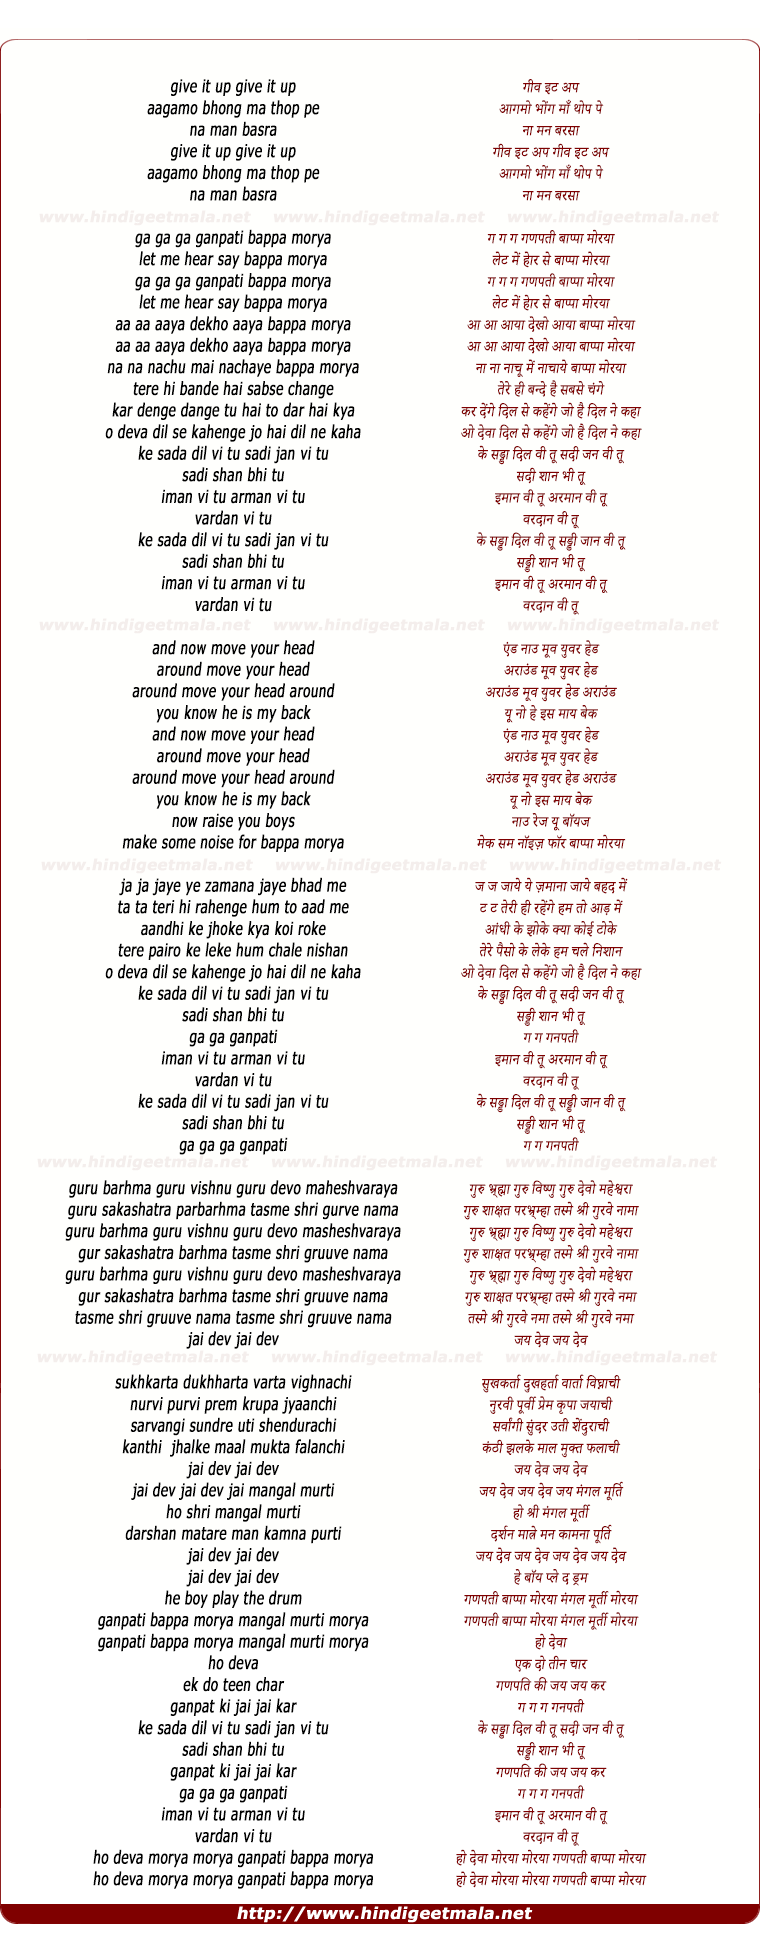 lyrics of song Sadda Dil VI Tu